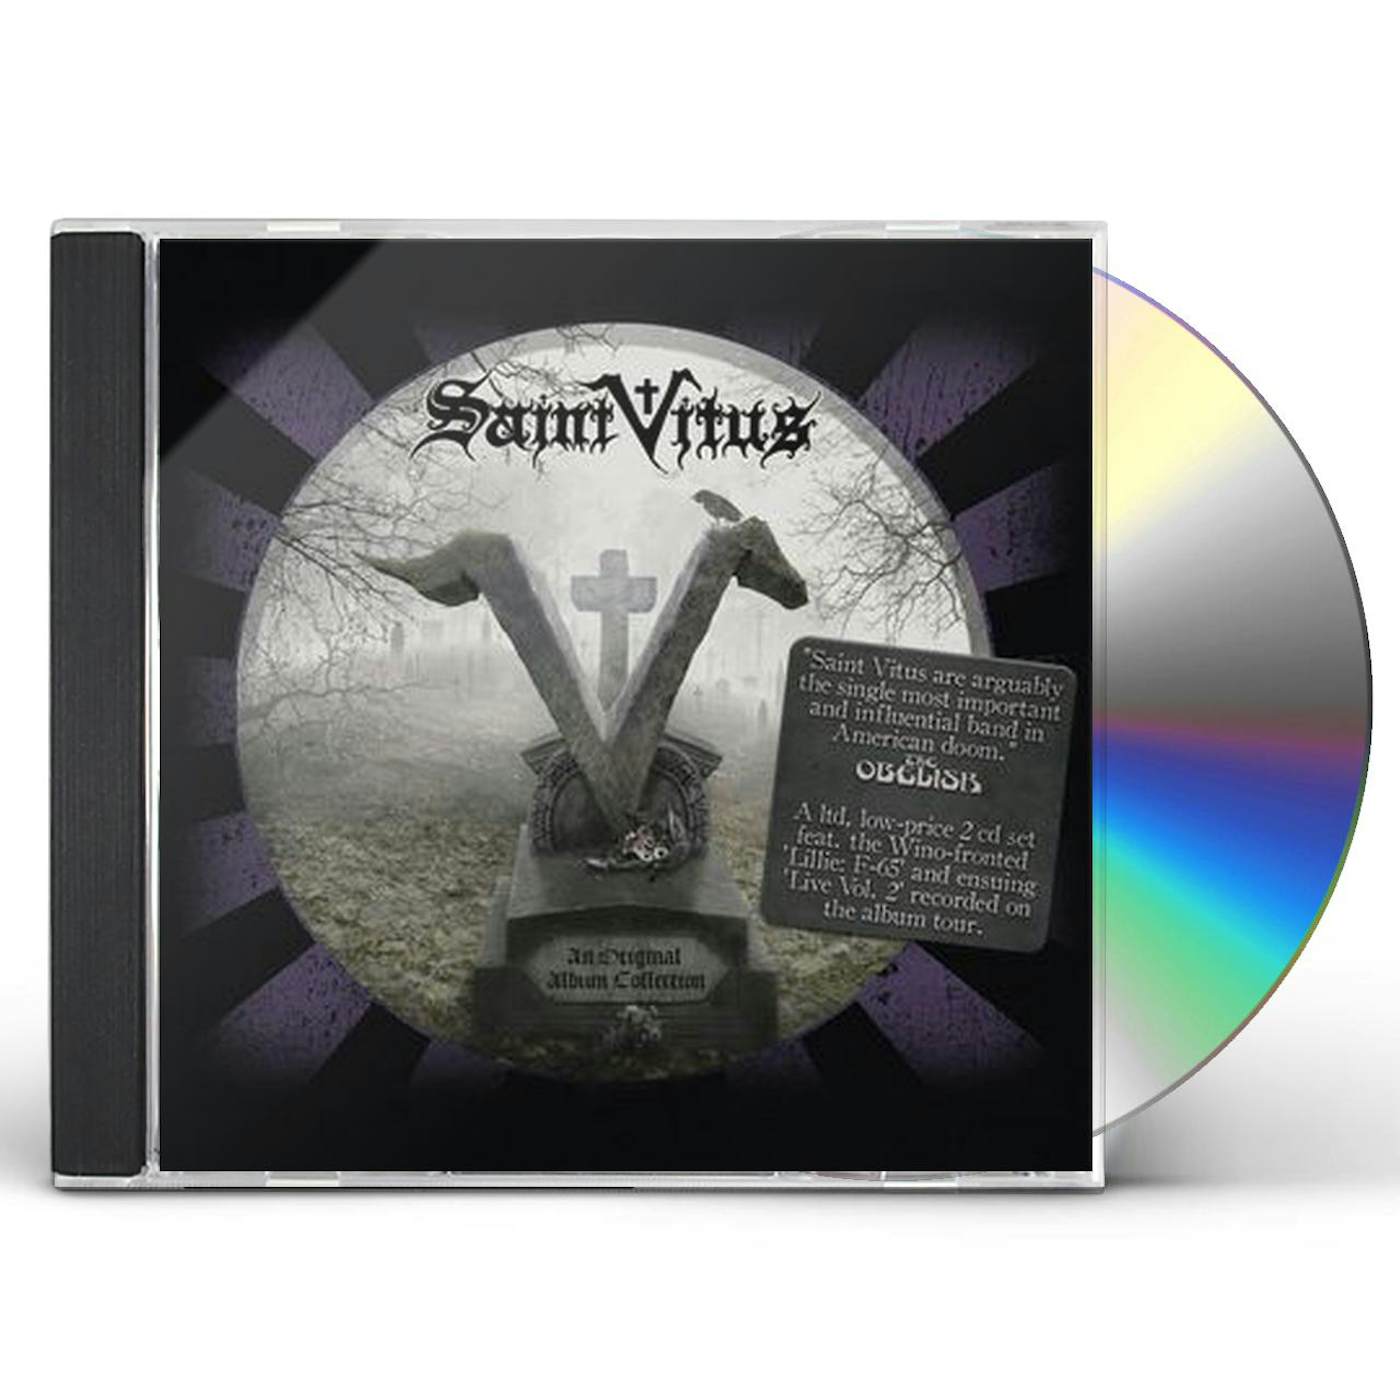 Saint Vitus AN ORIGINAL ALBUM COLLECTION: LILLIE: F-65 + LIVE CD